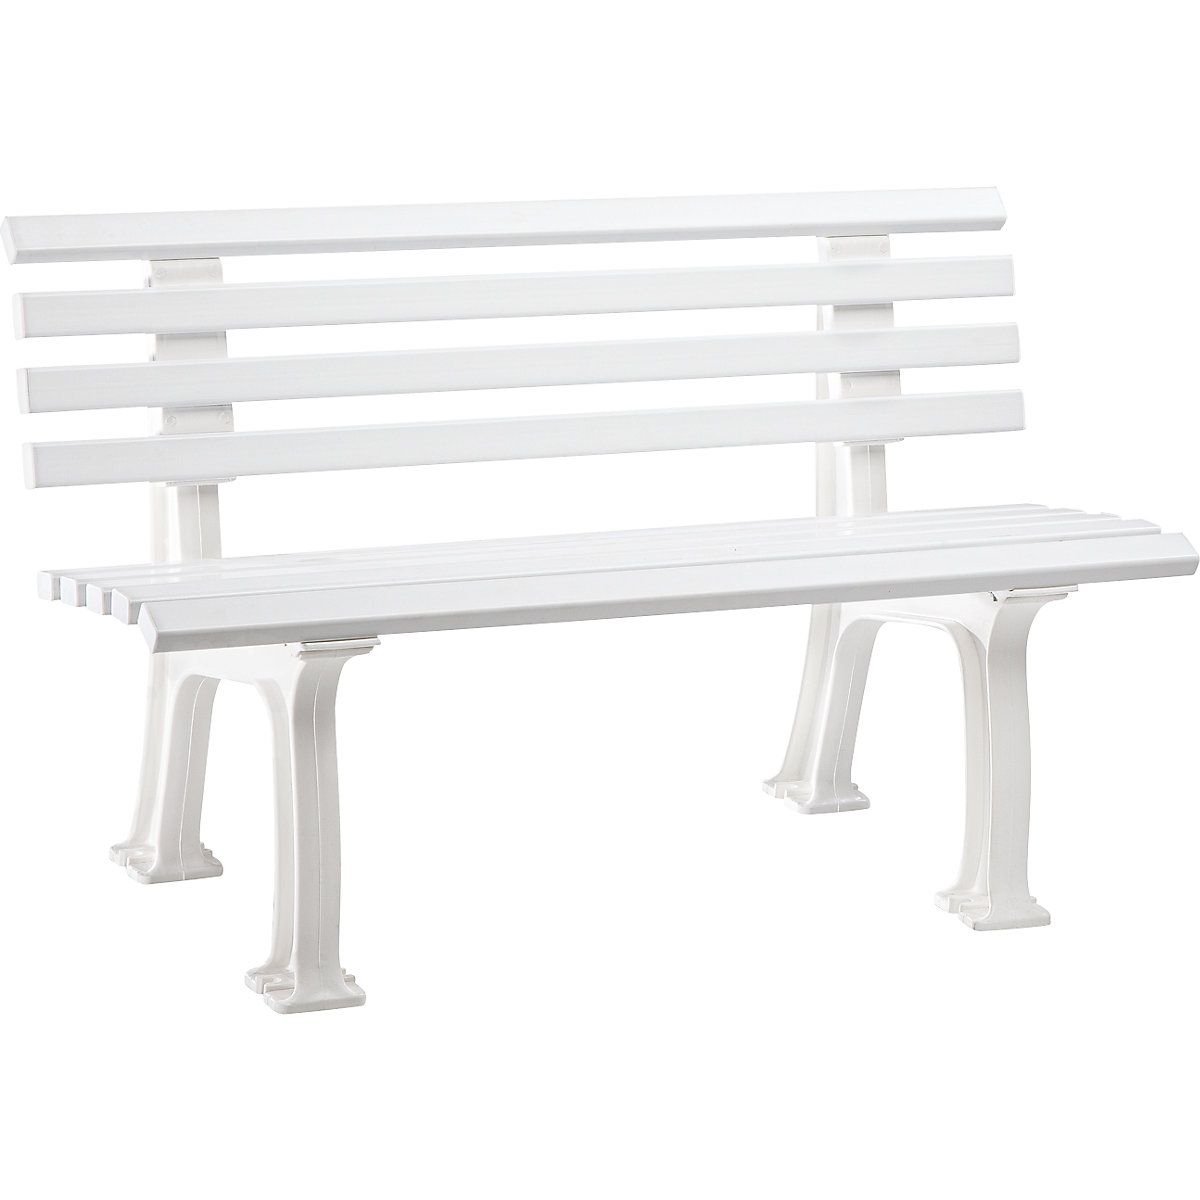 Parková lavička z plastu, s 9 lištami, šířka 1200 mm, bílá-6